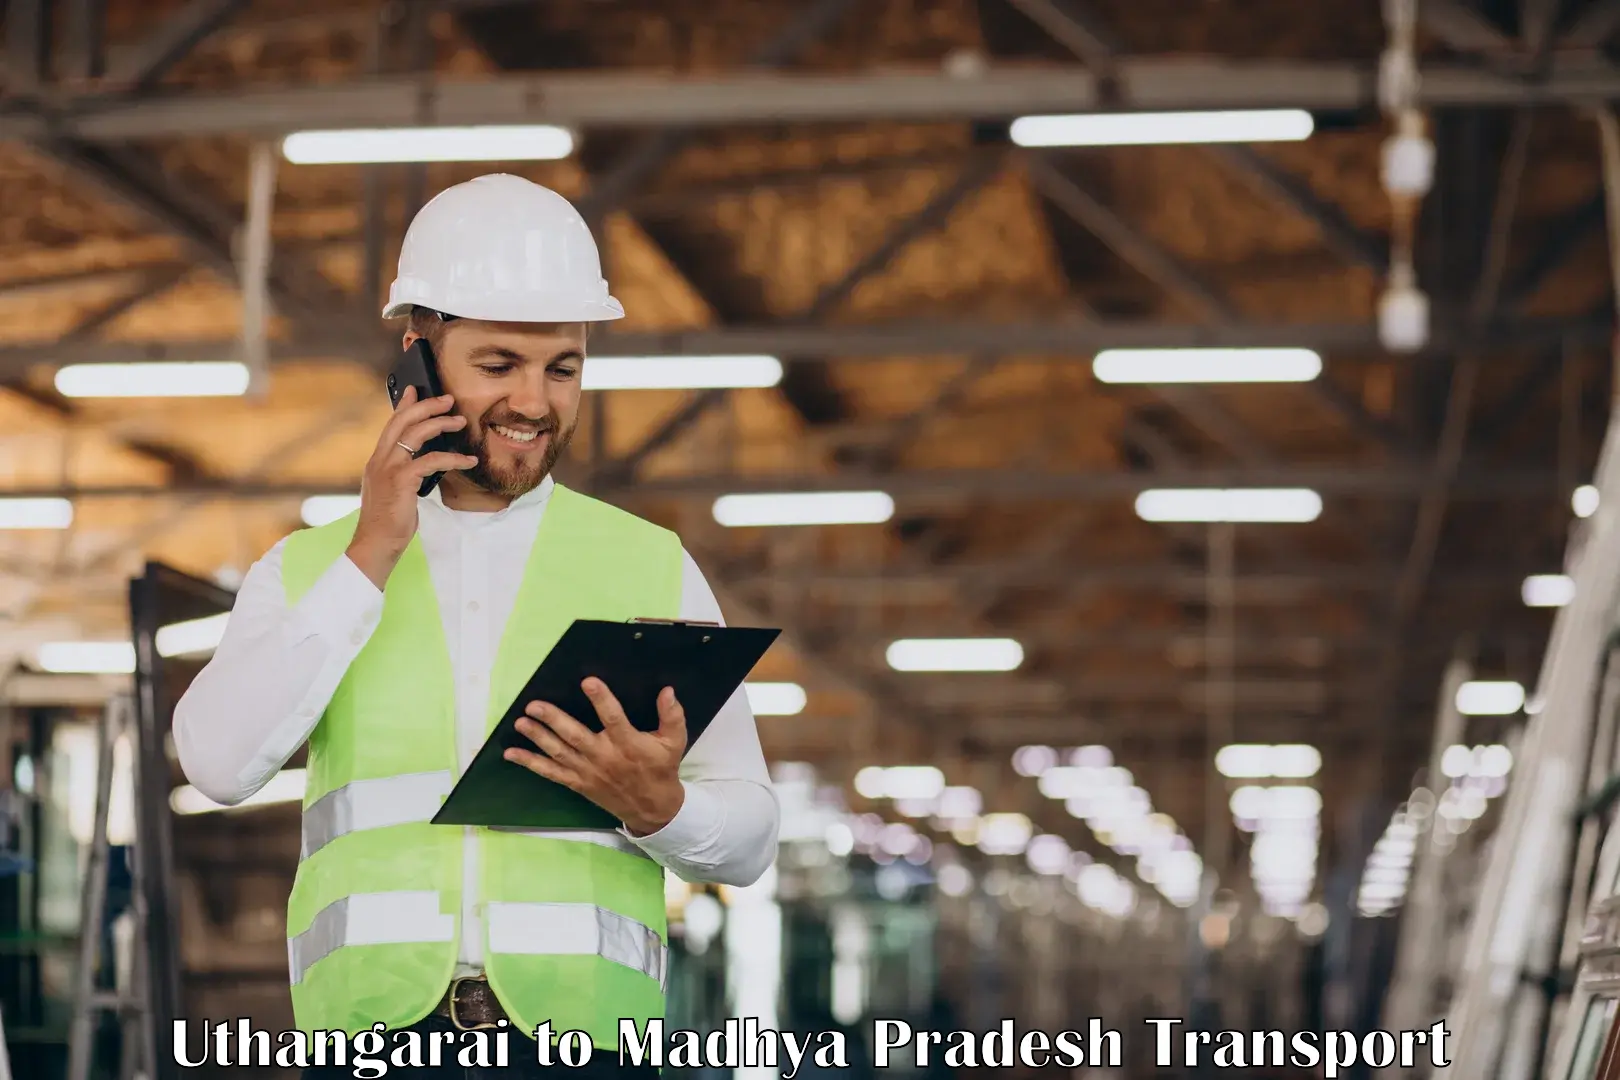 Interstate transport services Uthangarai to Madhya Pradesh